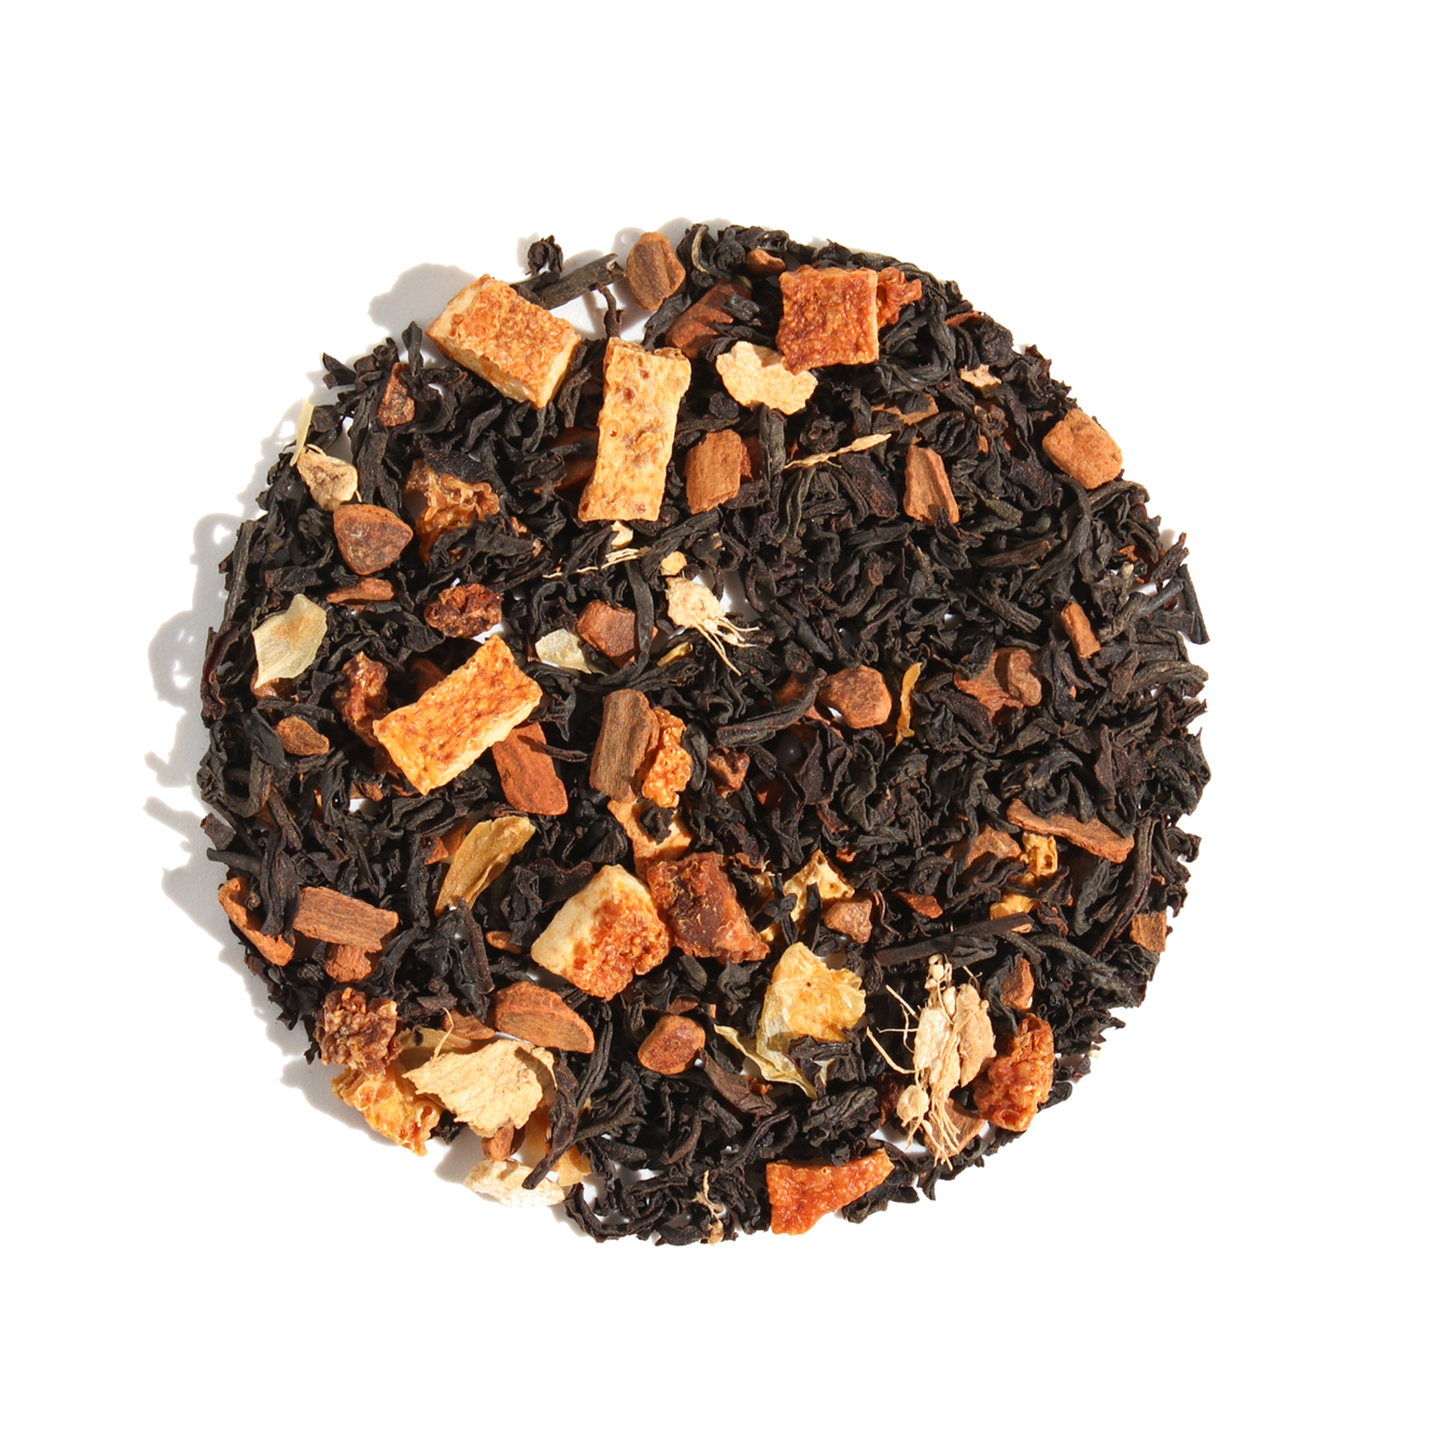 Comfort Blend Orange & Cinnamon Black Tea: Caffeinated